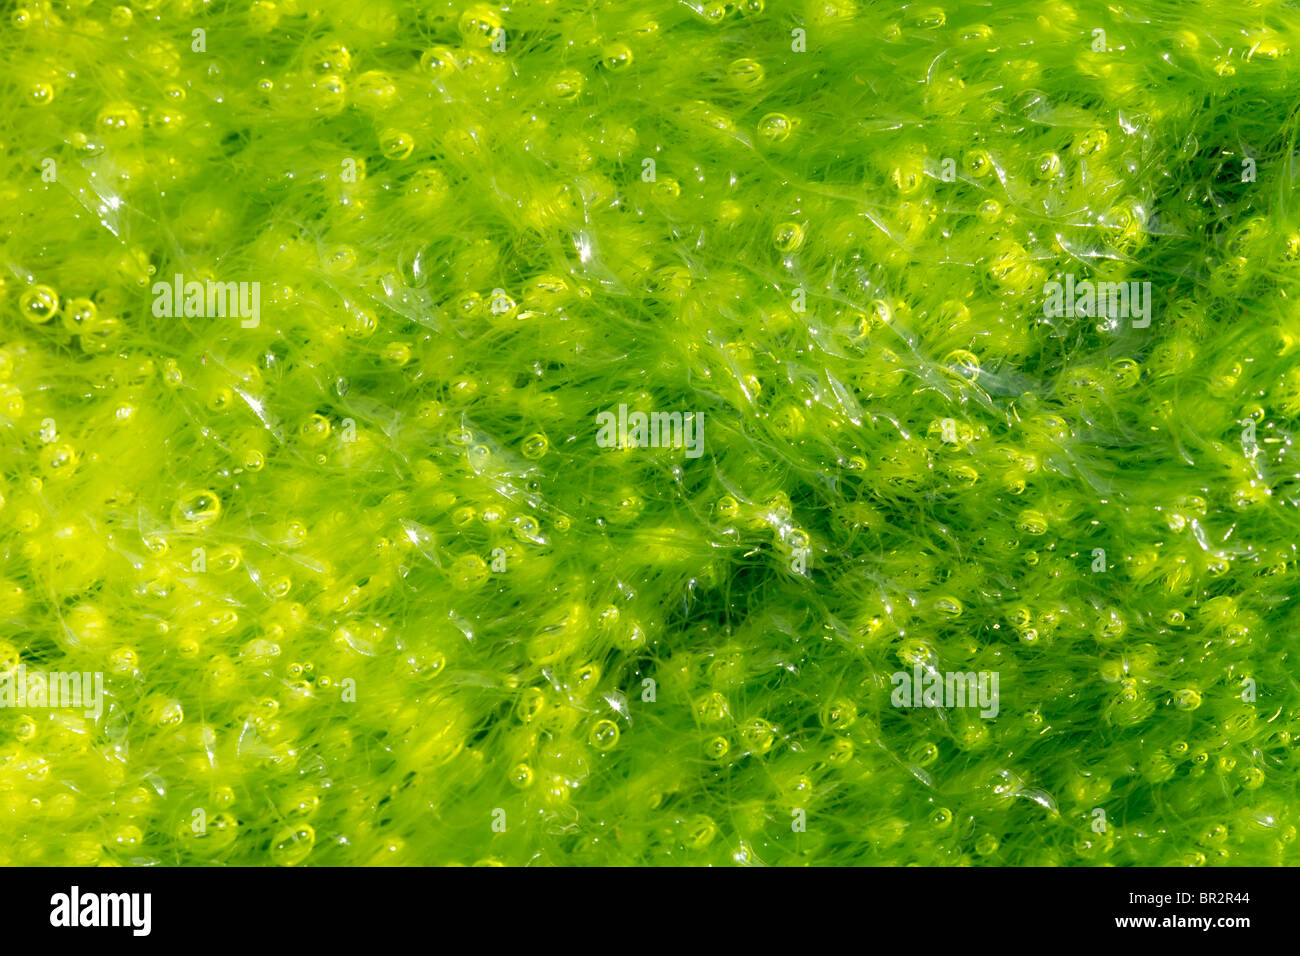 Antecedentes alga ulva con burbujas con marea baja. Foto de stock